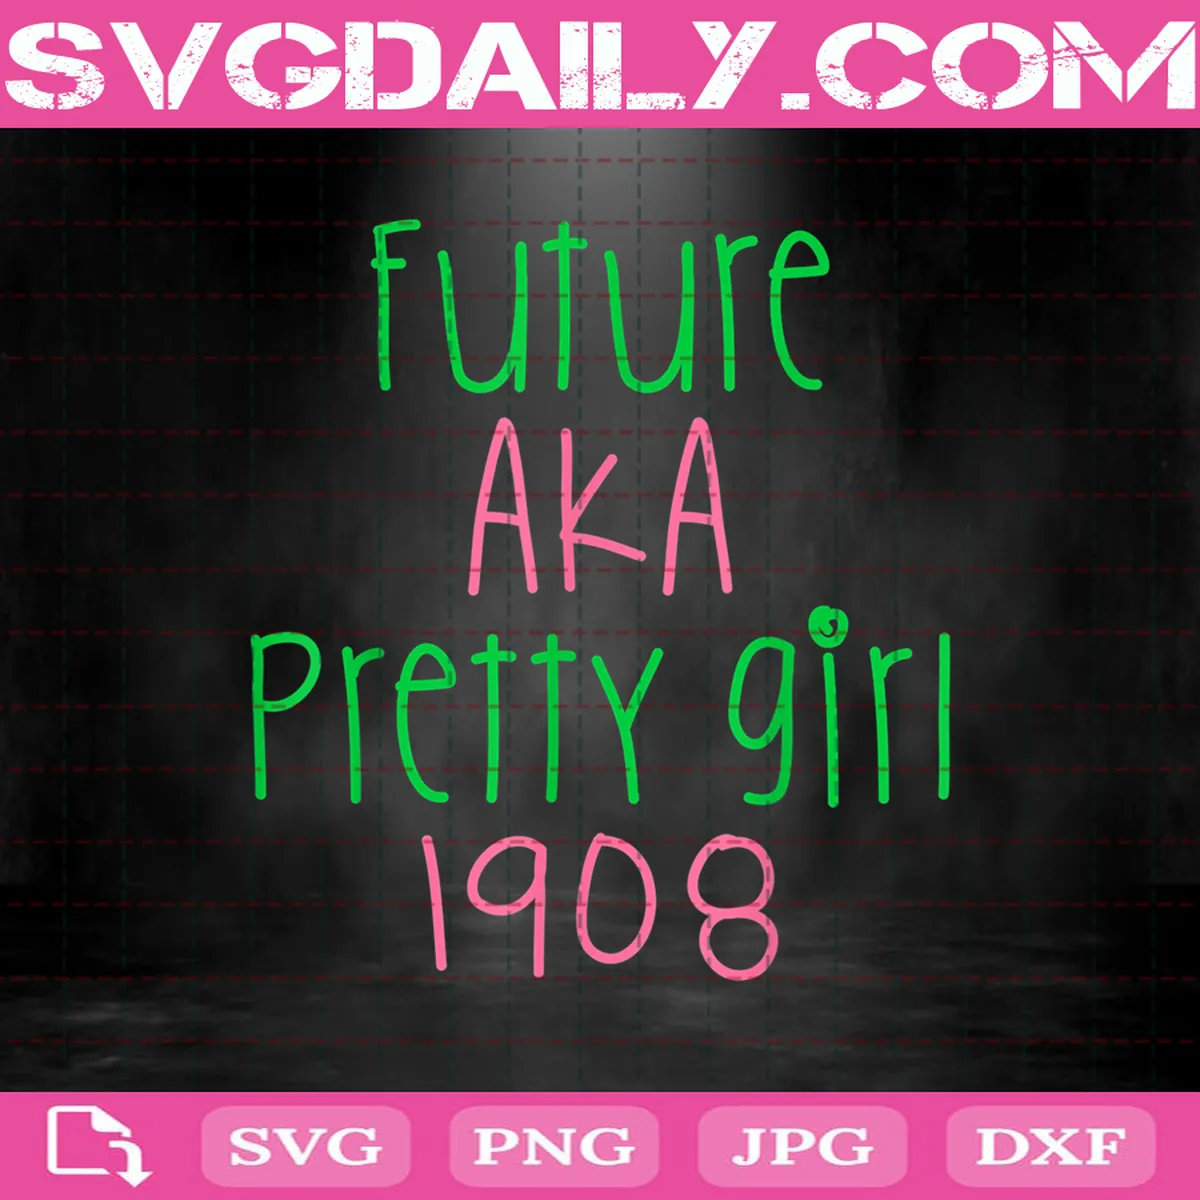 Future Aka Pretty Girl 1908 Svg, Aka 1908 Svg, Aka Pretty Girl Svg, Alpha Kappa Alpha Svg, Pretty Girl Alpha Kappa Alpha Svg